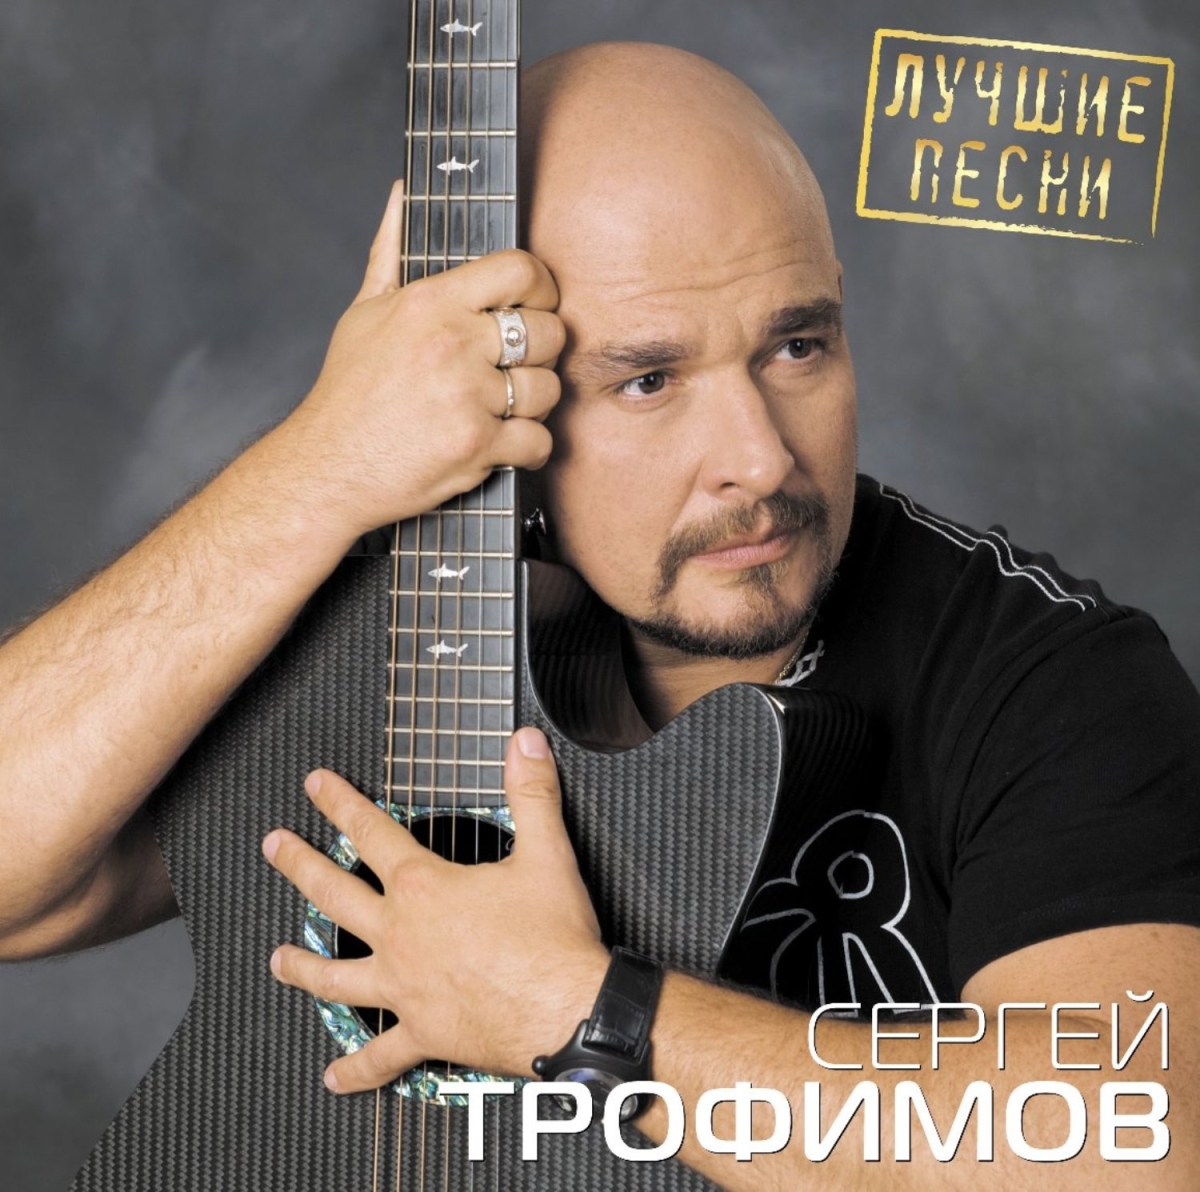 Сборники Bomba Music Сергей Трофимов - Лучшие Песни (Black Vinyl LP)